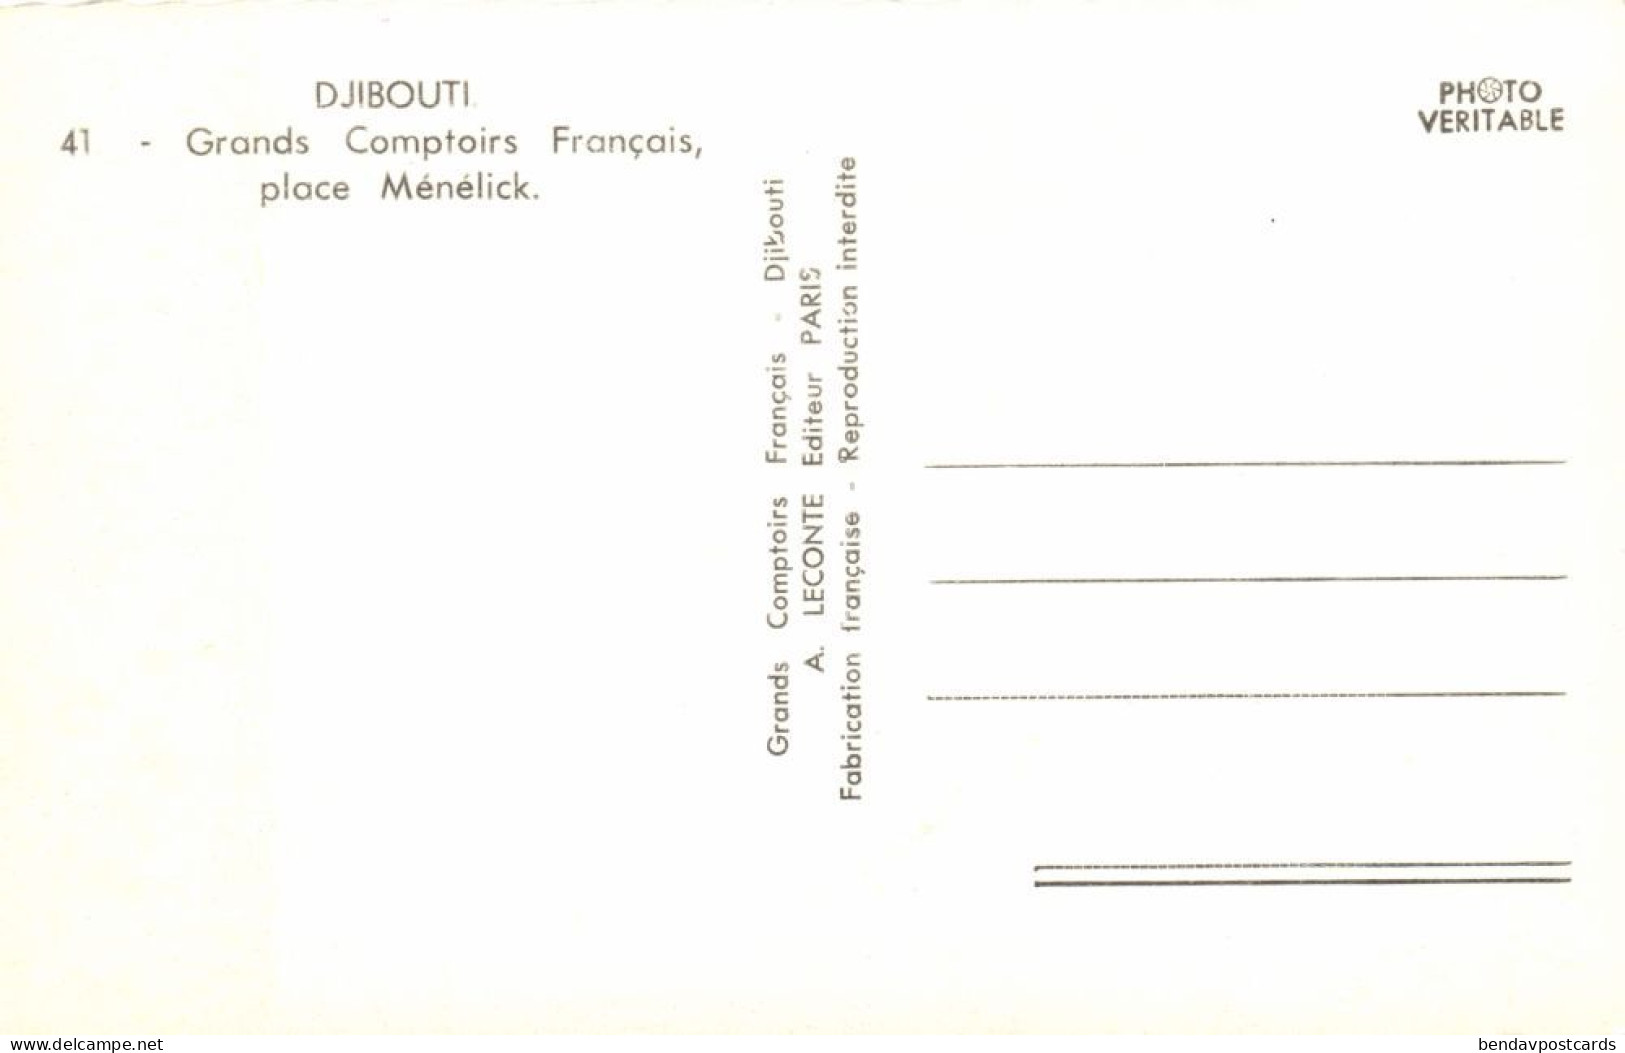 Djibouti, DJIBOUTI, Grands Comptoirs Français (1950s) RPPC Postcard - Gibuti